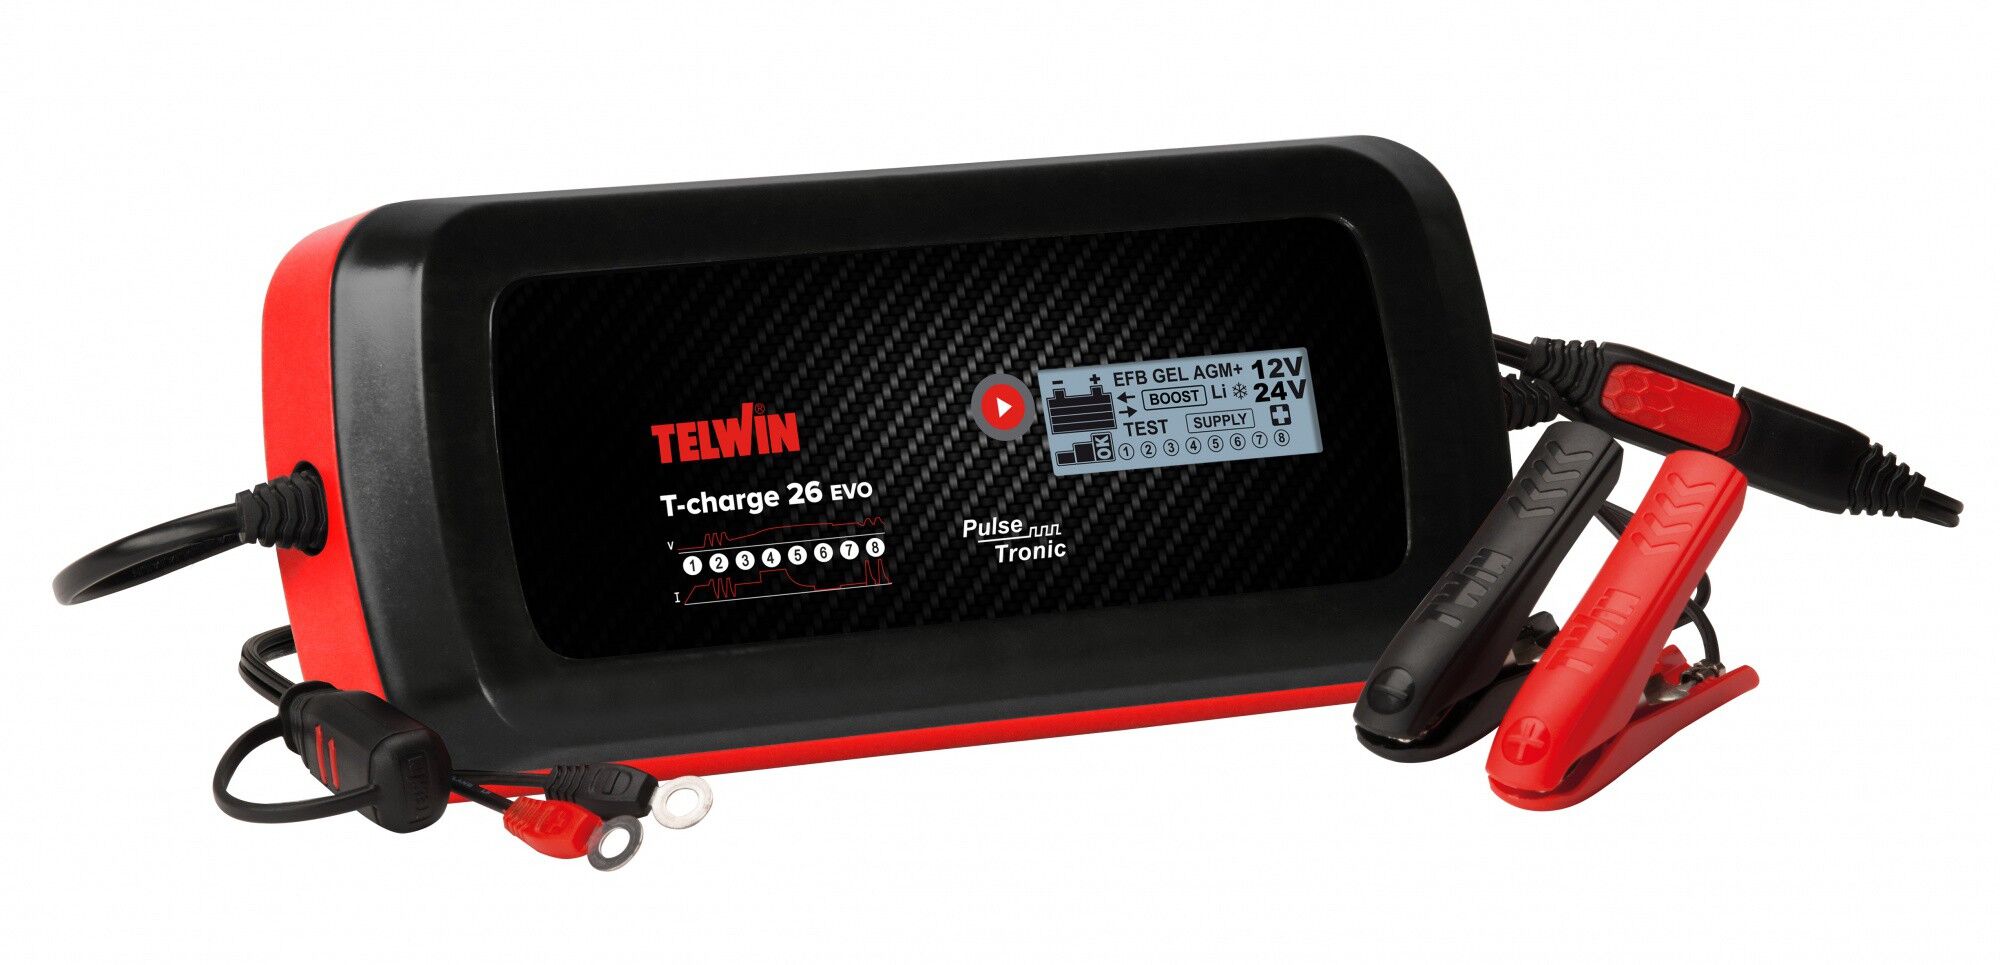 Зарядное устройство T-CHARGE 26 EVO 12V/24V Telwin